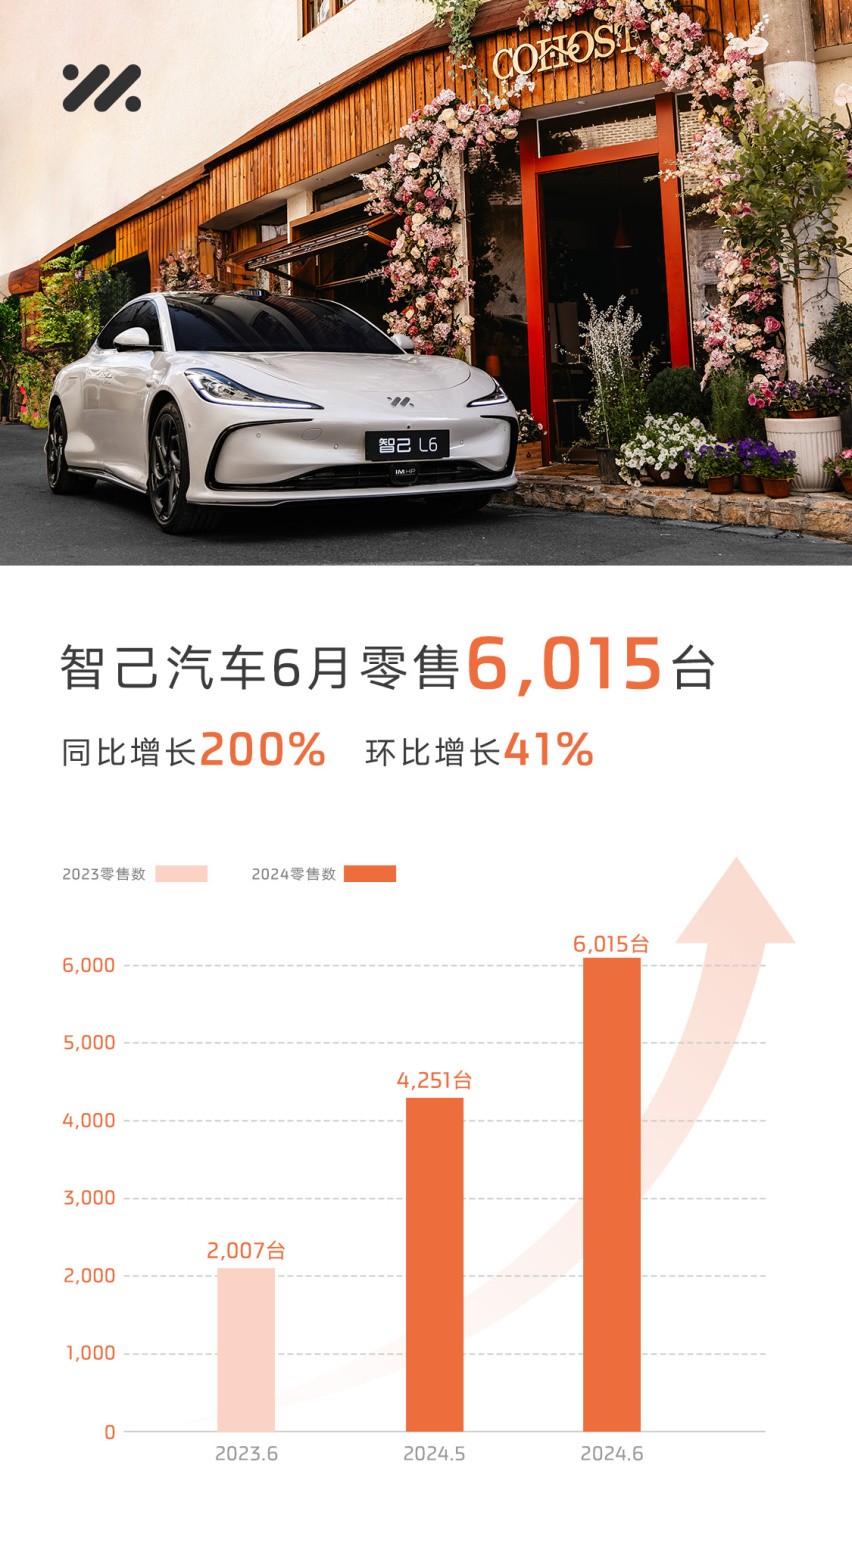 智己汽车6月销售6,015台，同比大涨200% 95后占比超50%